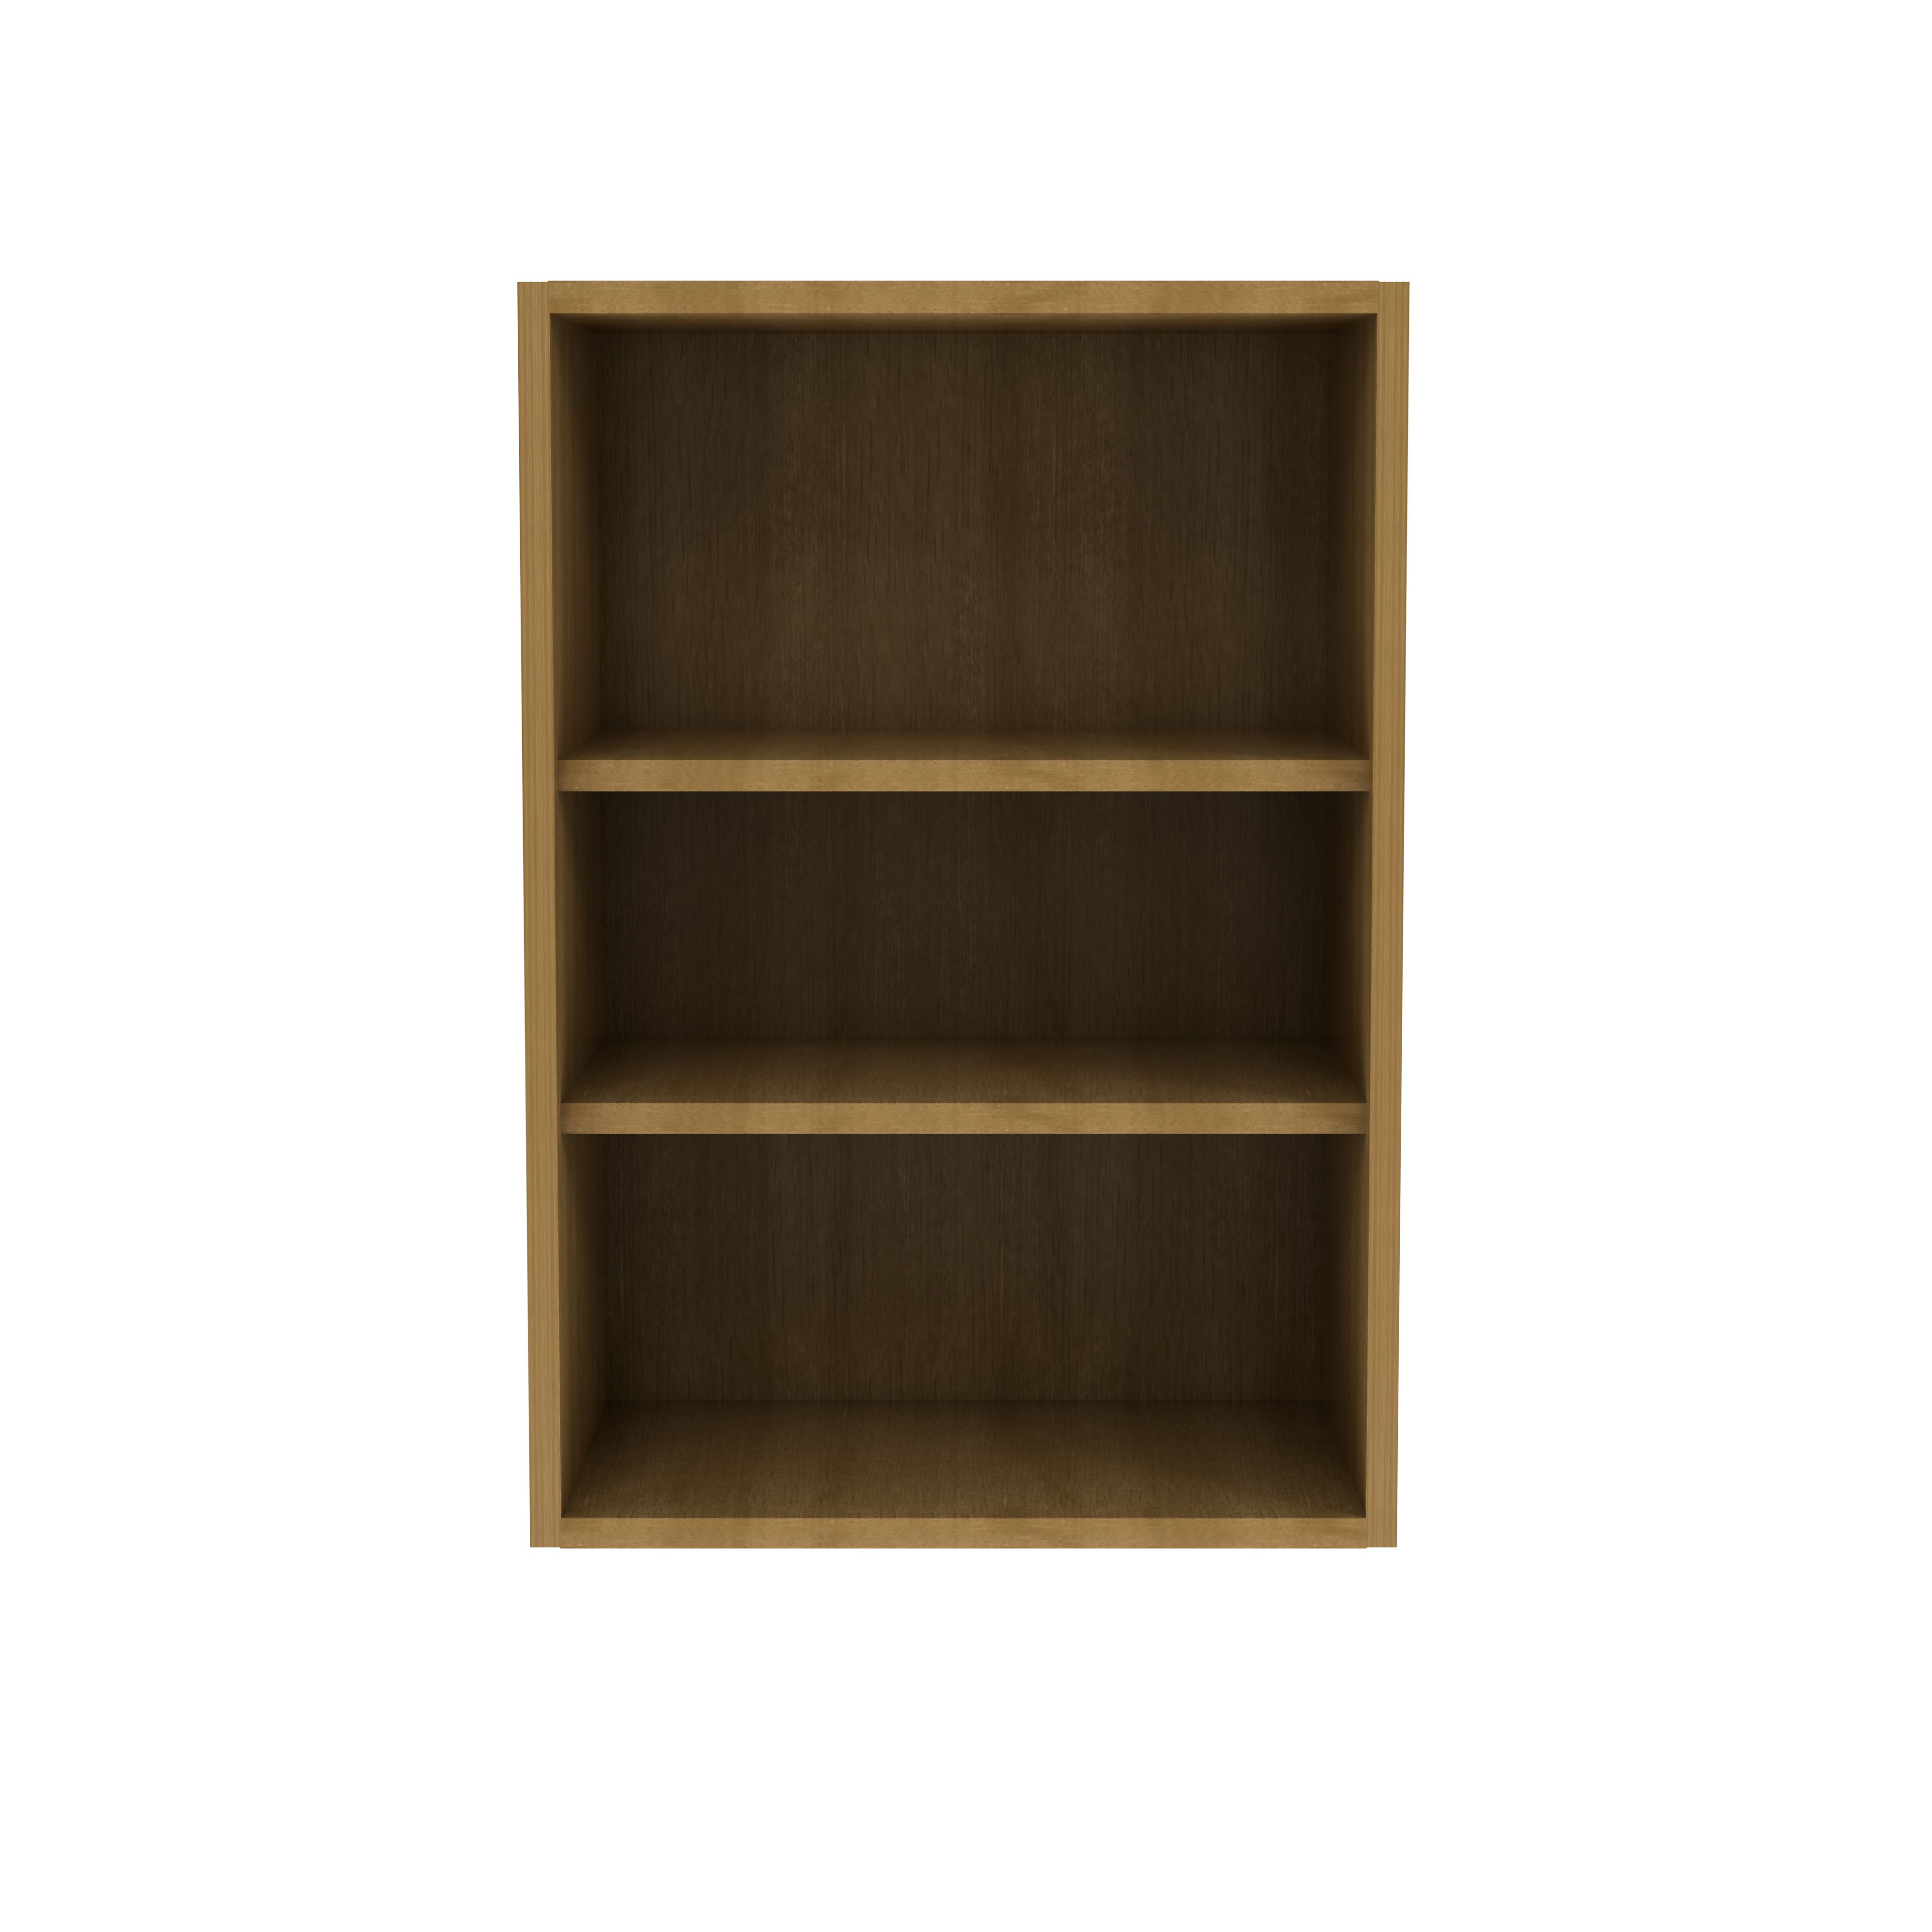 GoodHome Caraway Oak effect Standard wall cabinet, (W)500mm (D)320mm